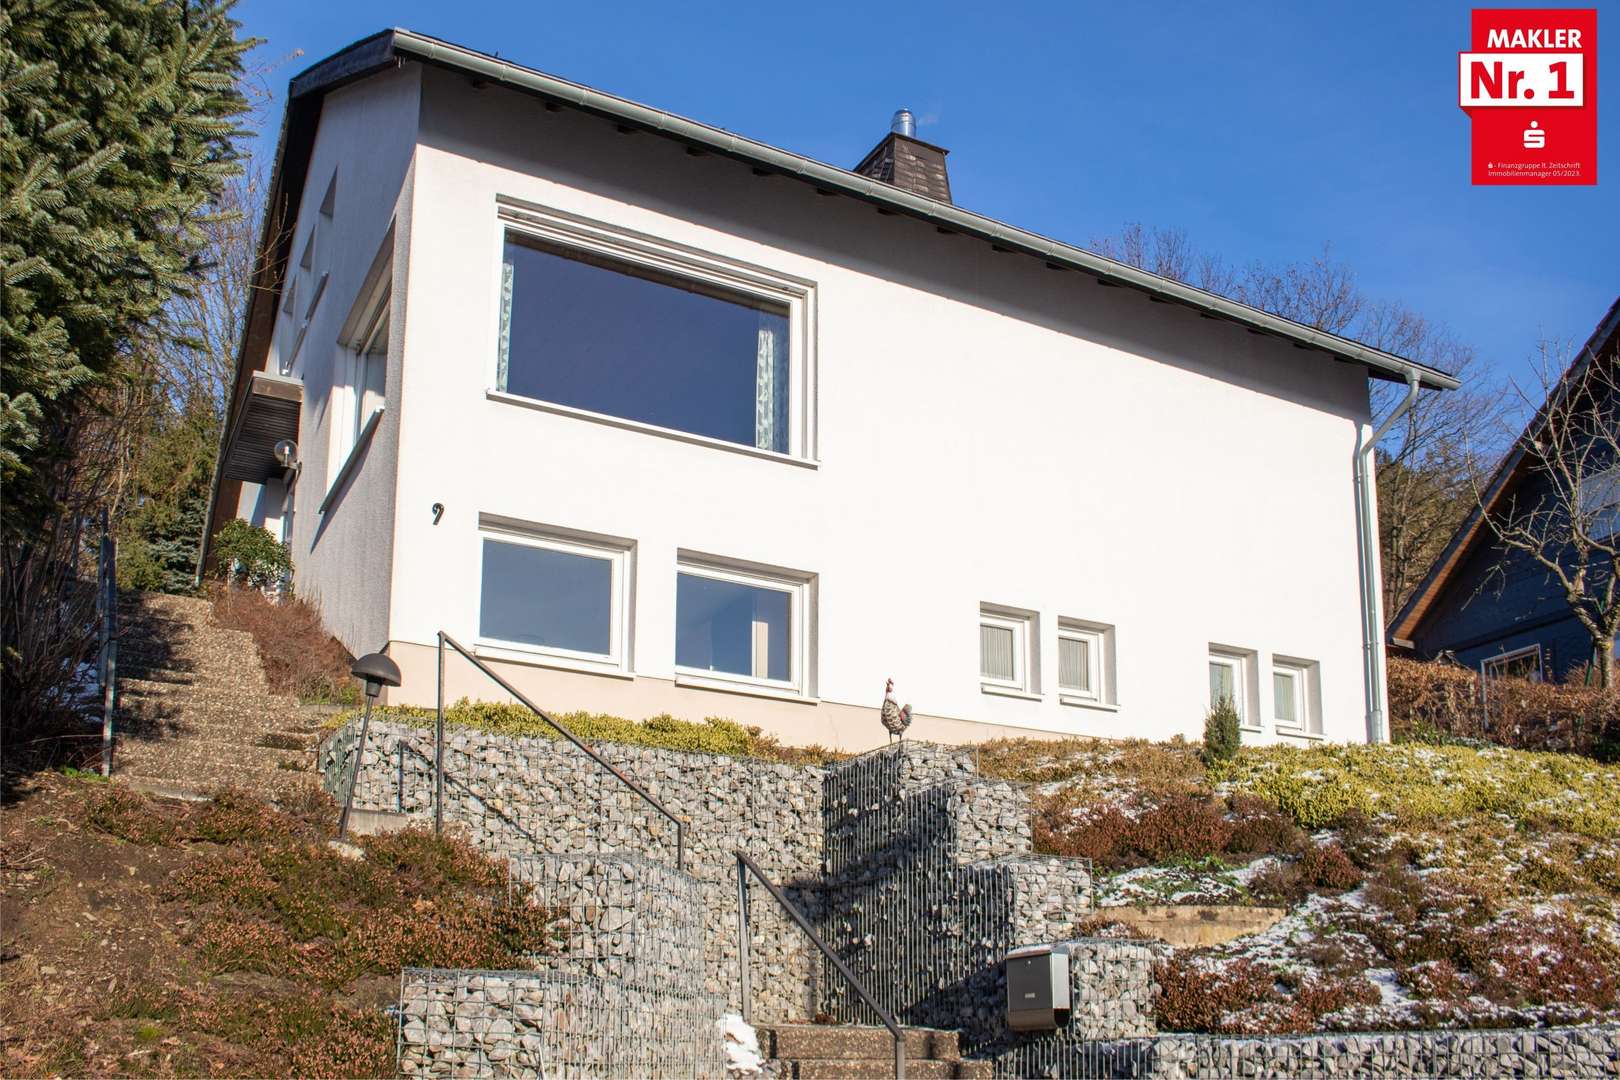 fio 2956014 - Einfamilienhaus in 59939 Olsberg mit 148m² kaufen